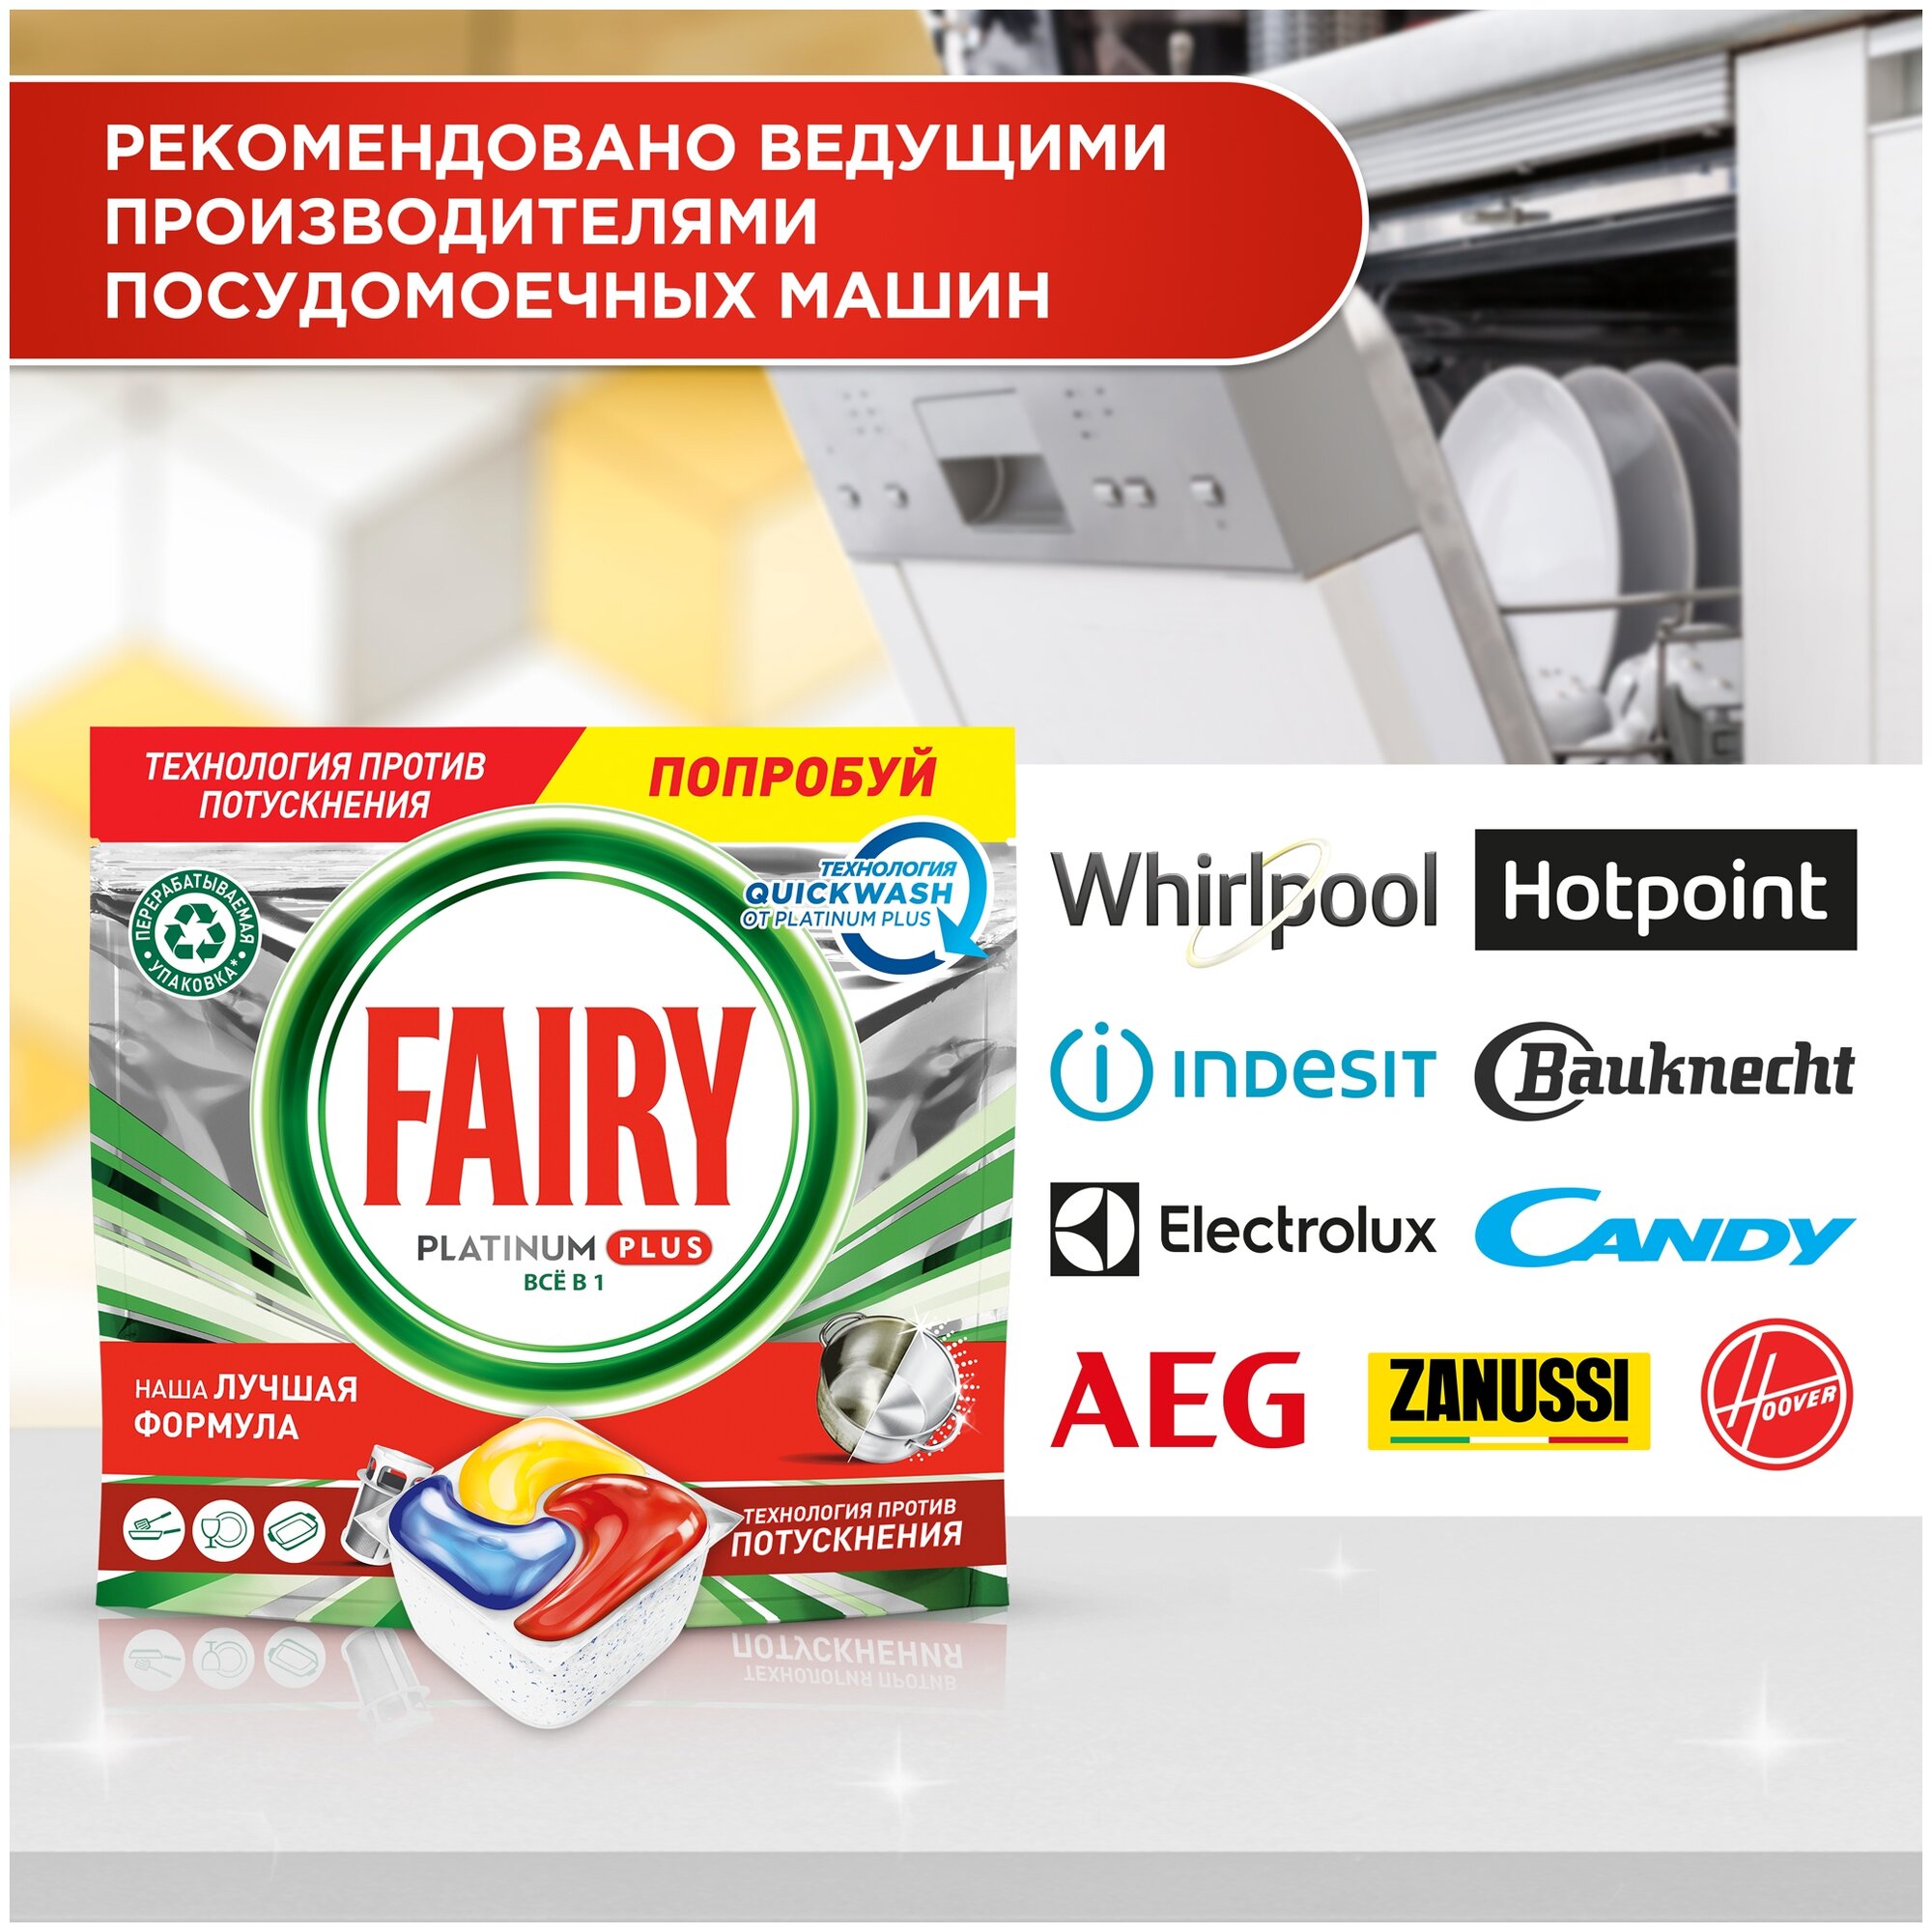 Fairy Капсулы для посудомоечной машины Platinum Plus All in One Лимон, 50 шт.